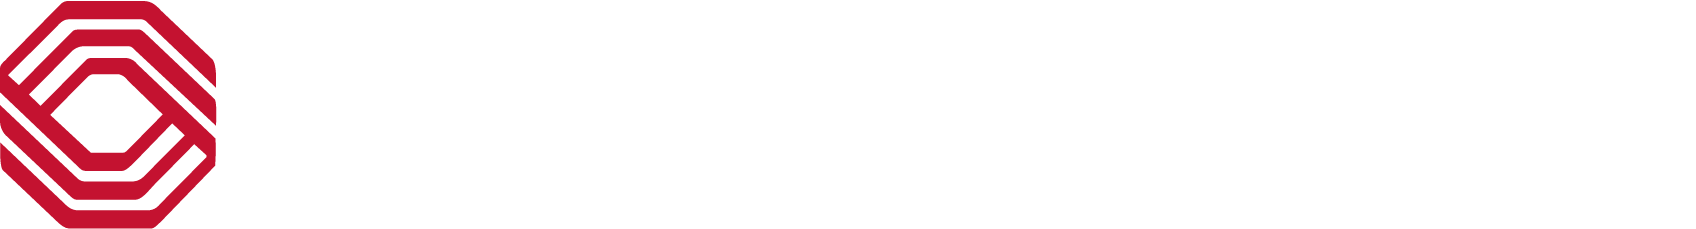 BOK Financial logo large for dark backgrounds (transparent PNG)